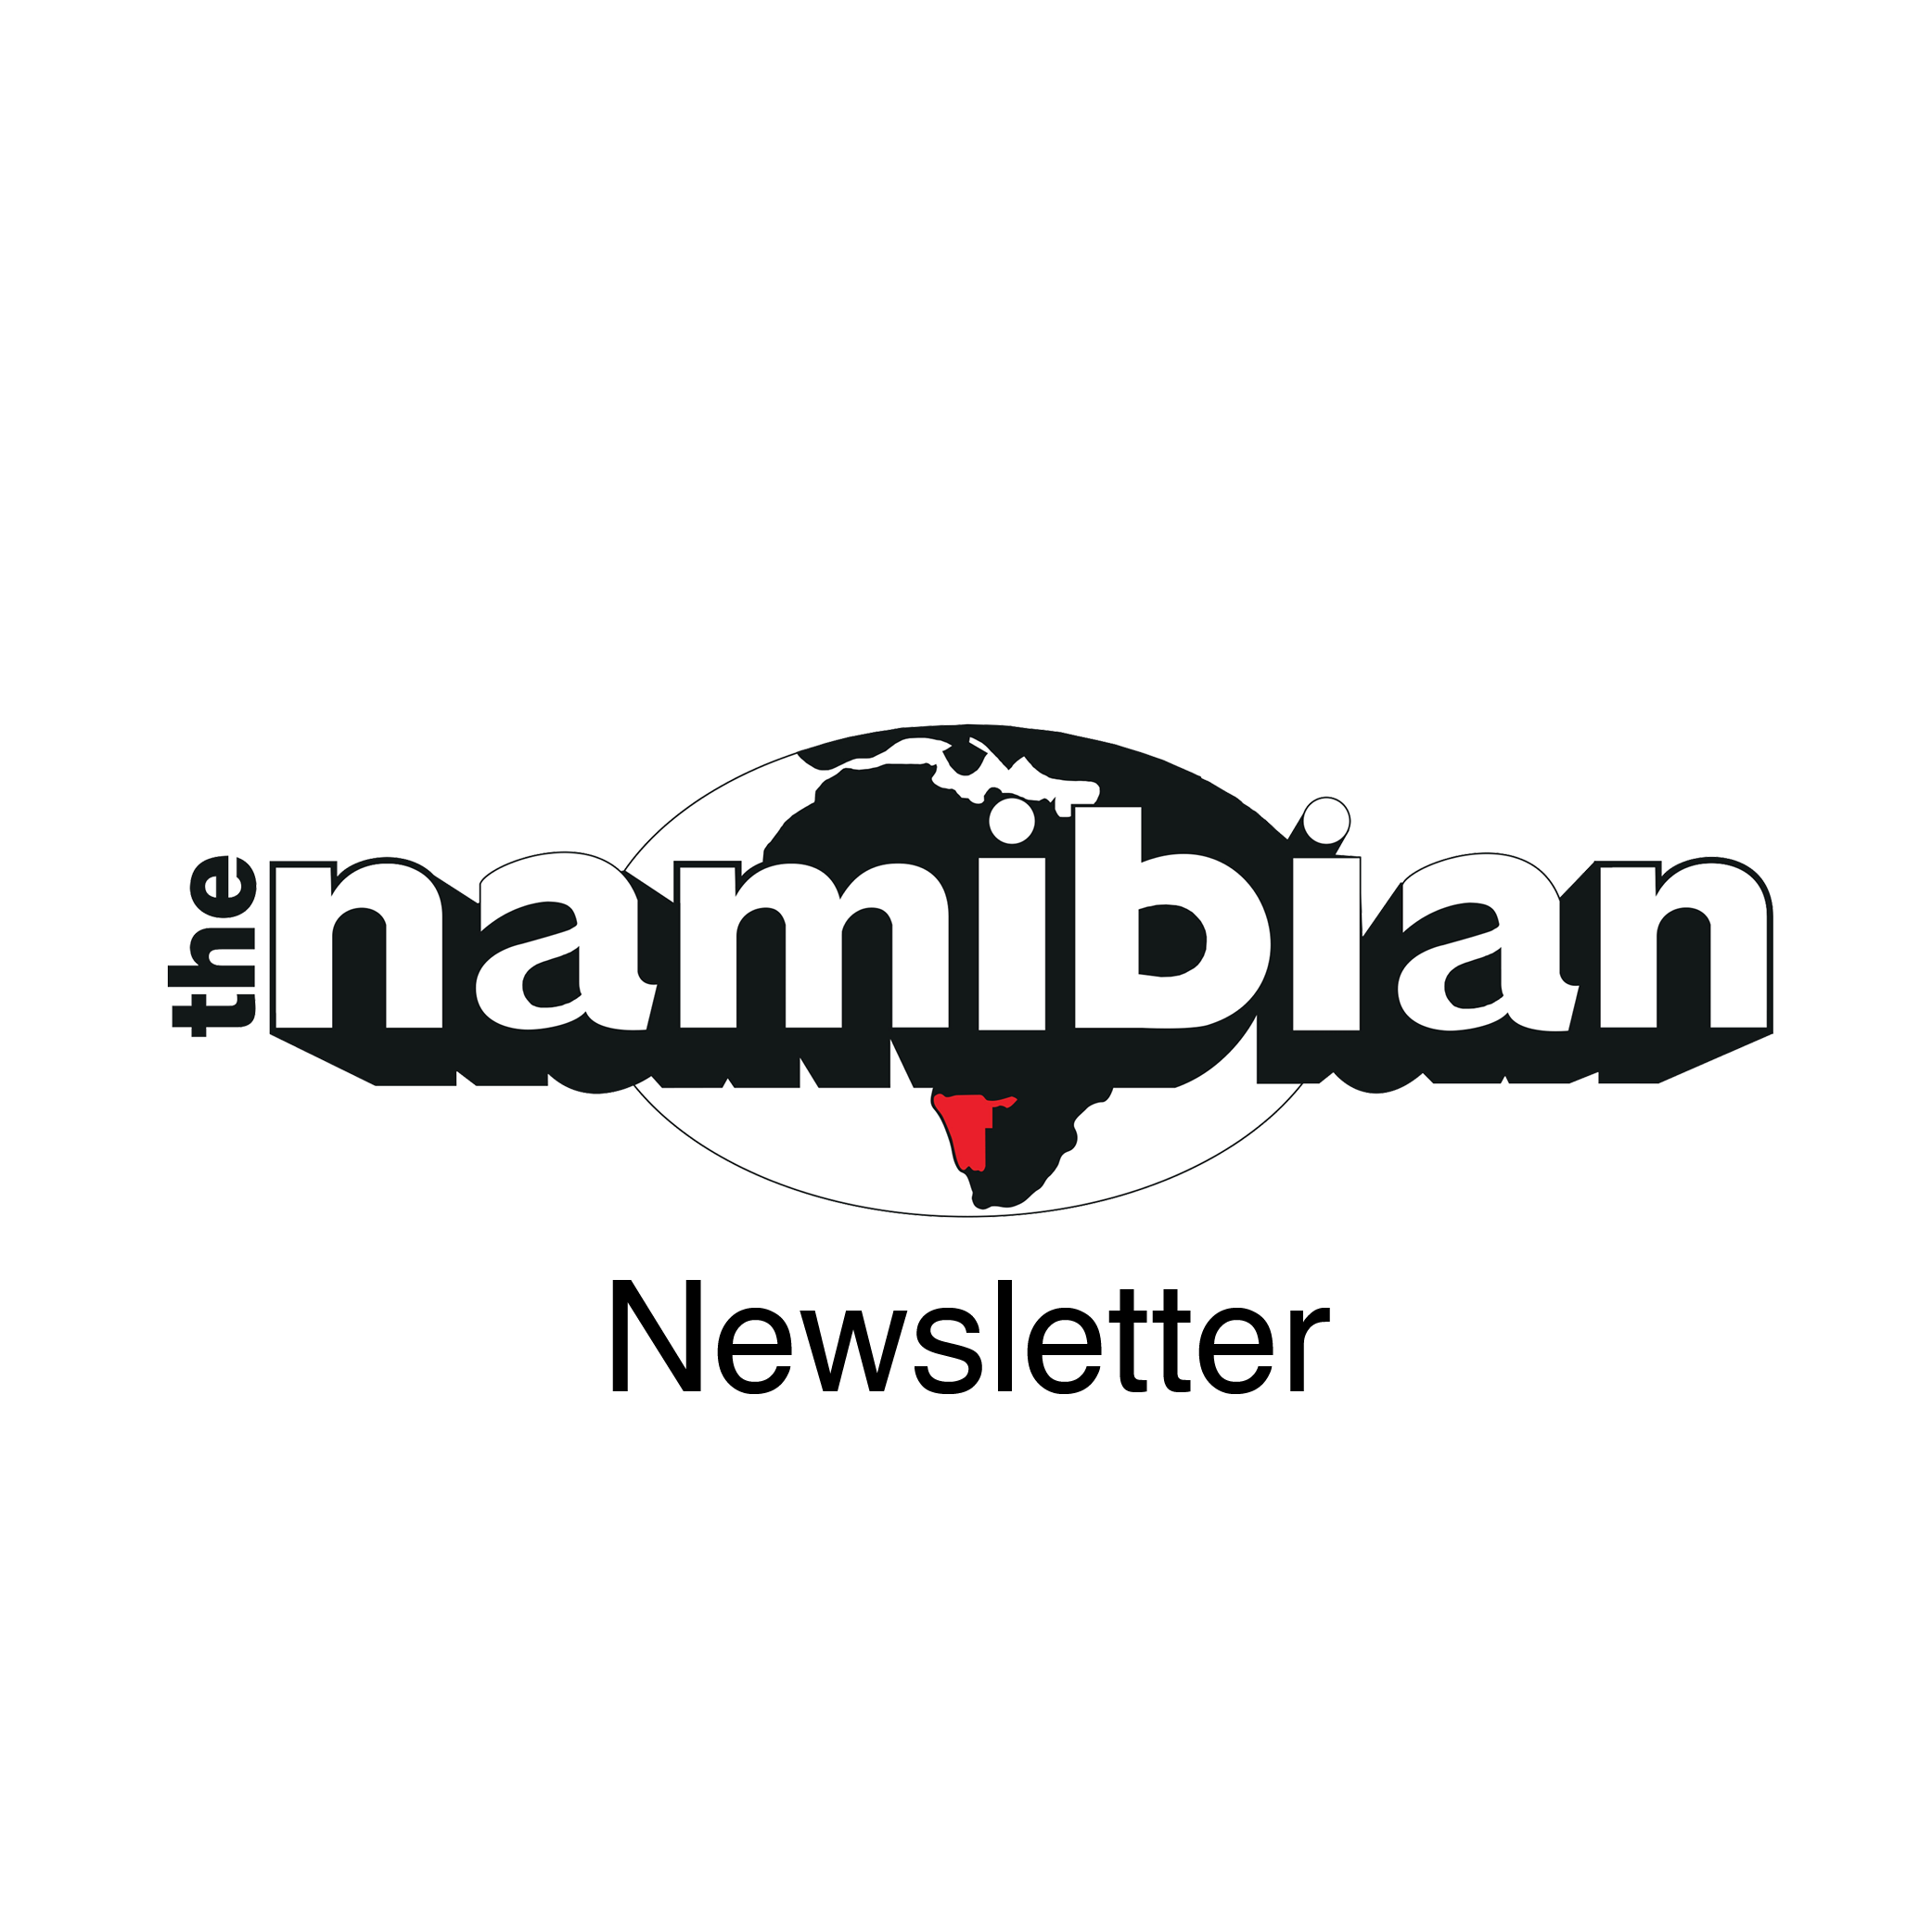 The Namibian Newsletter